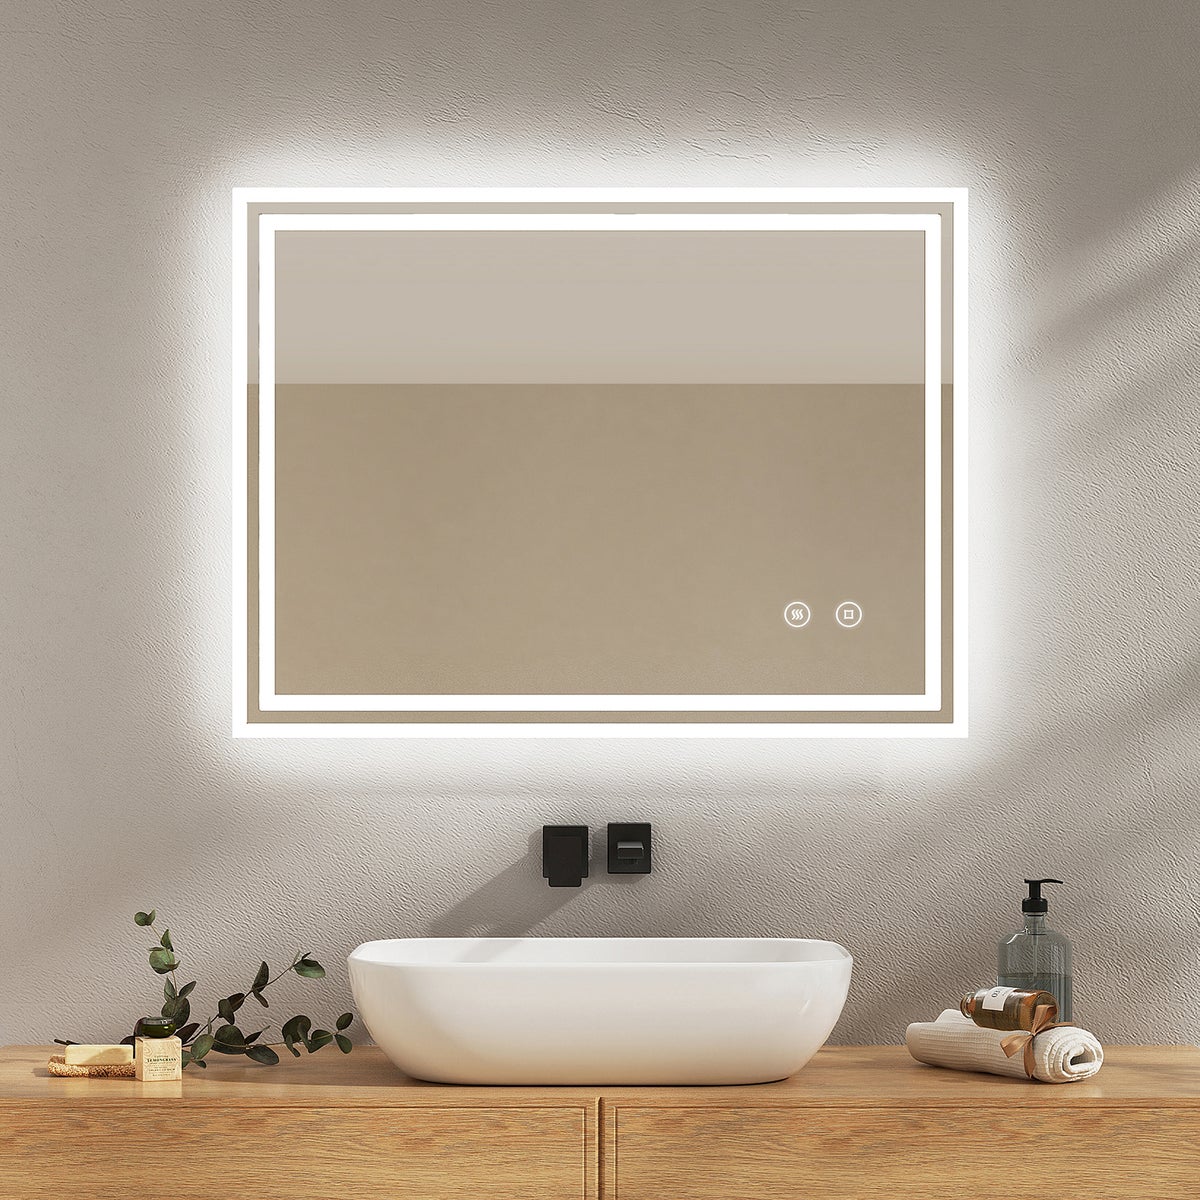 EMKE Badspiegel mit Touch 6500K LED-Beleuchtung eckig, Beschlagfrei, Helligkeit Einstellbar, Memory-Funktion, Horizontal&Vertical 90 x 70 cm